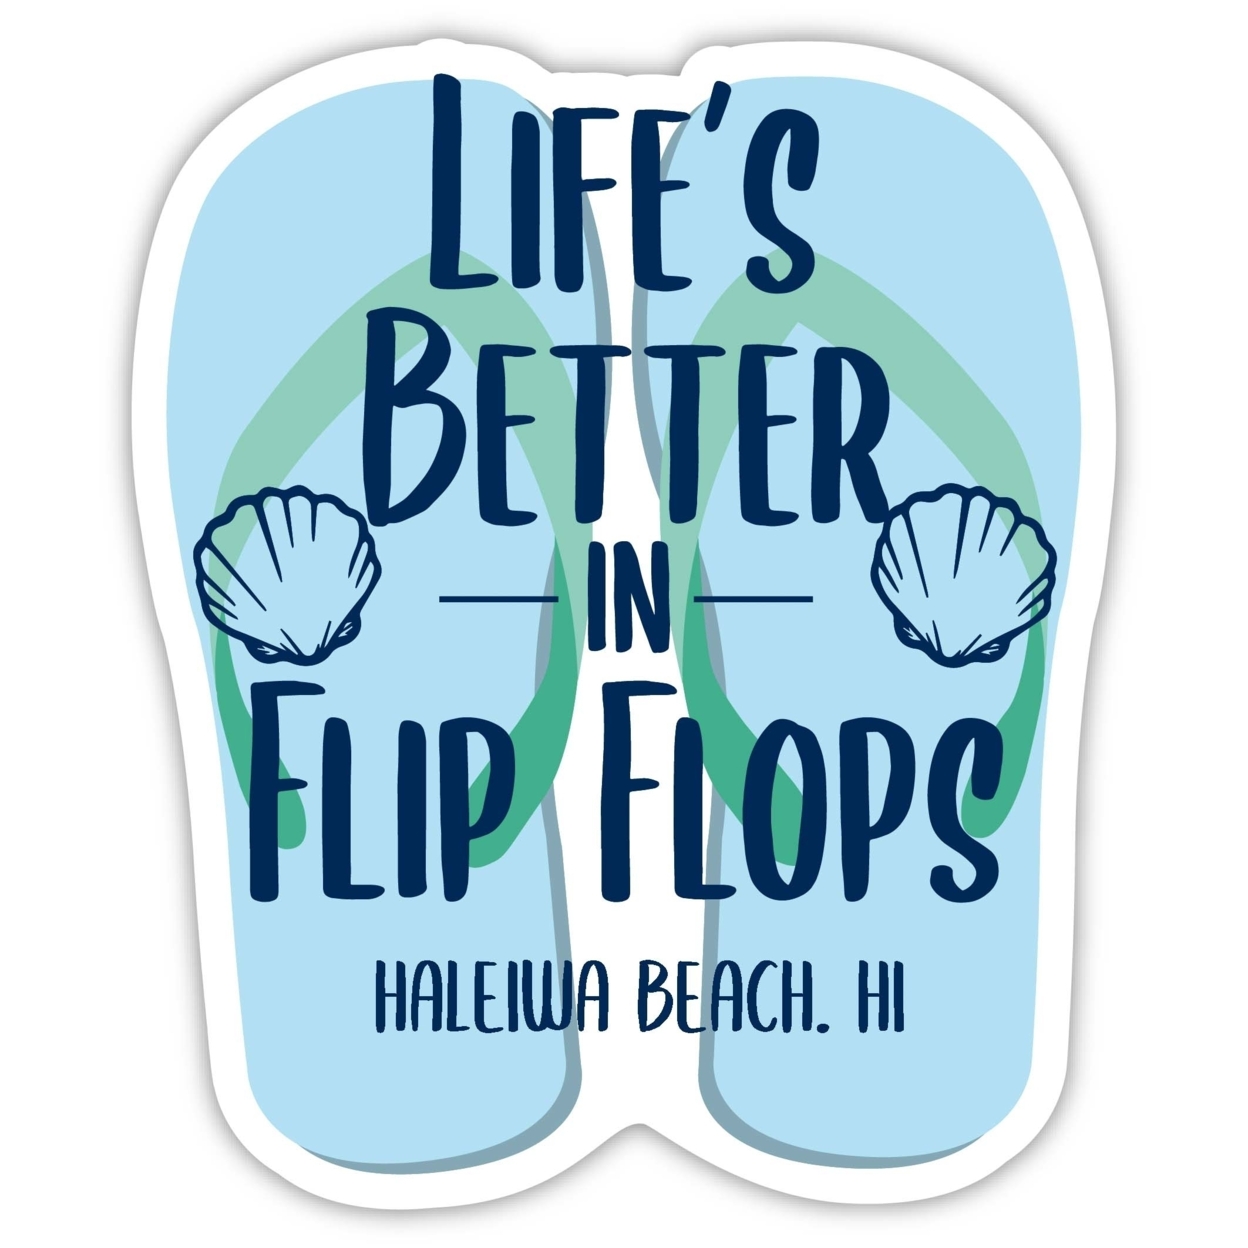 Haleiwa Beach Hawaii Souvenir 4 Inch Vinyl Decal Sticker Flip Flop Design